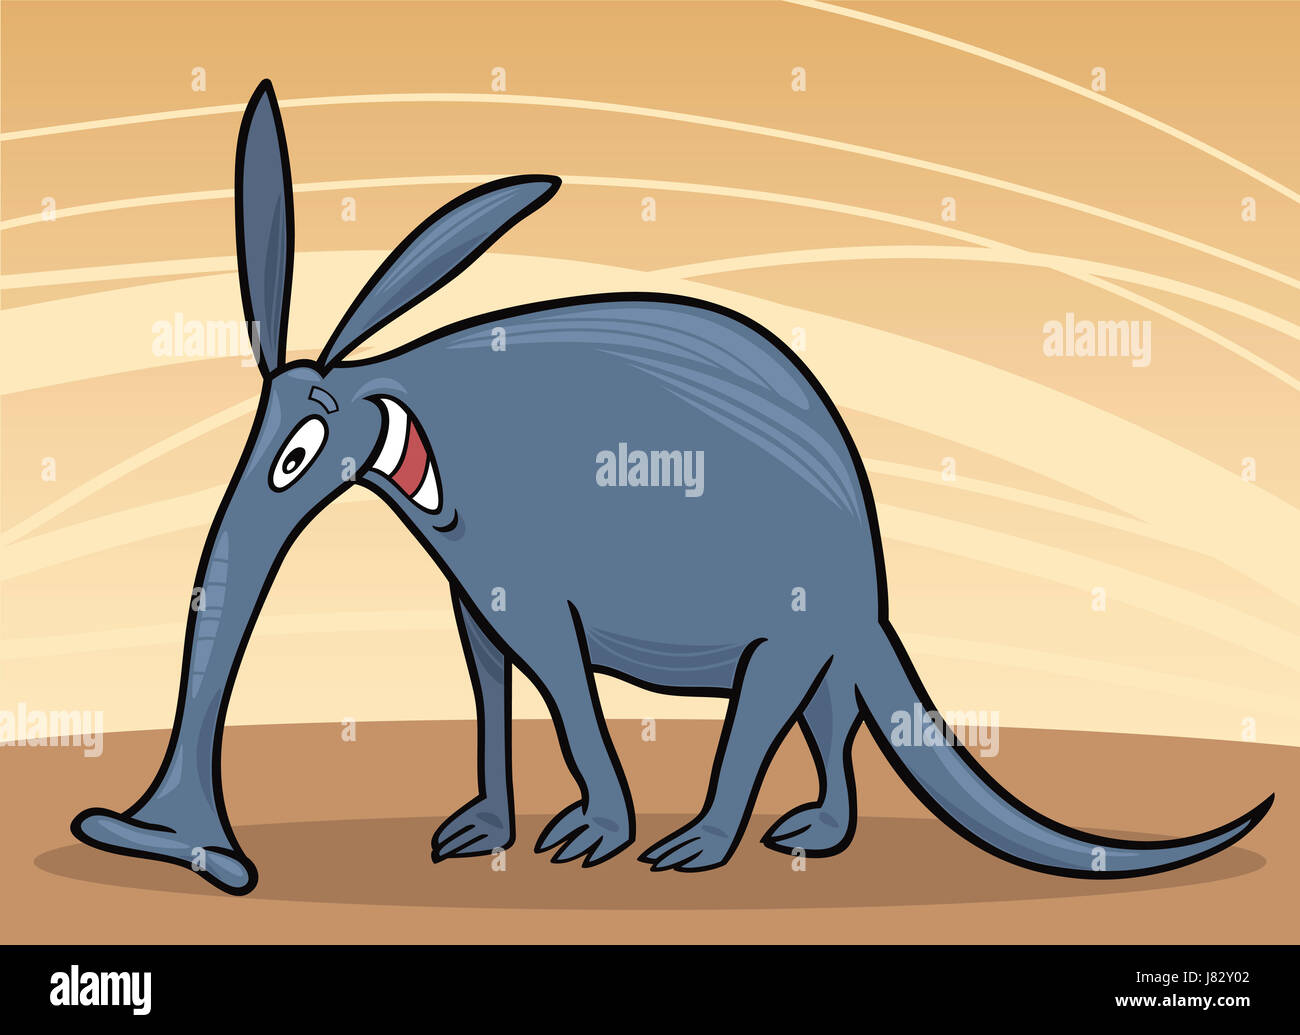 Fumetto selvaggio animale illustrazione creatura funny cartoon aardvark ridere risate Foto Stock